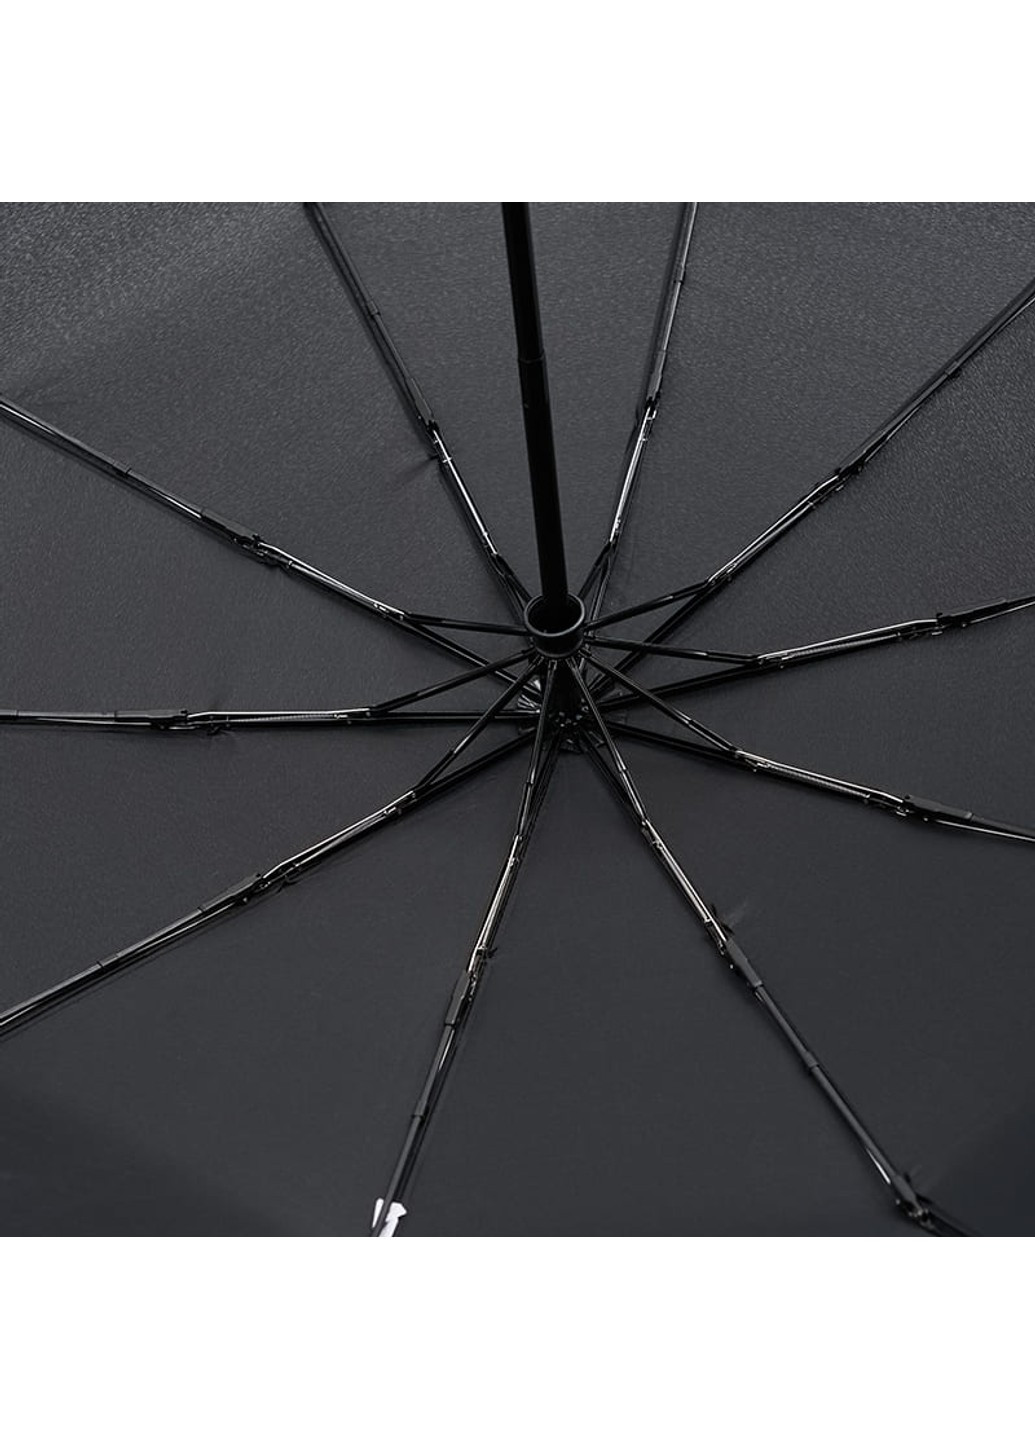 Автоматический зонт C18898-black Monsen (266143848)